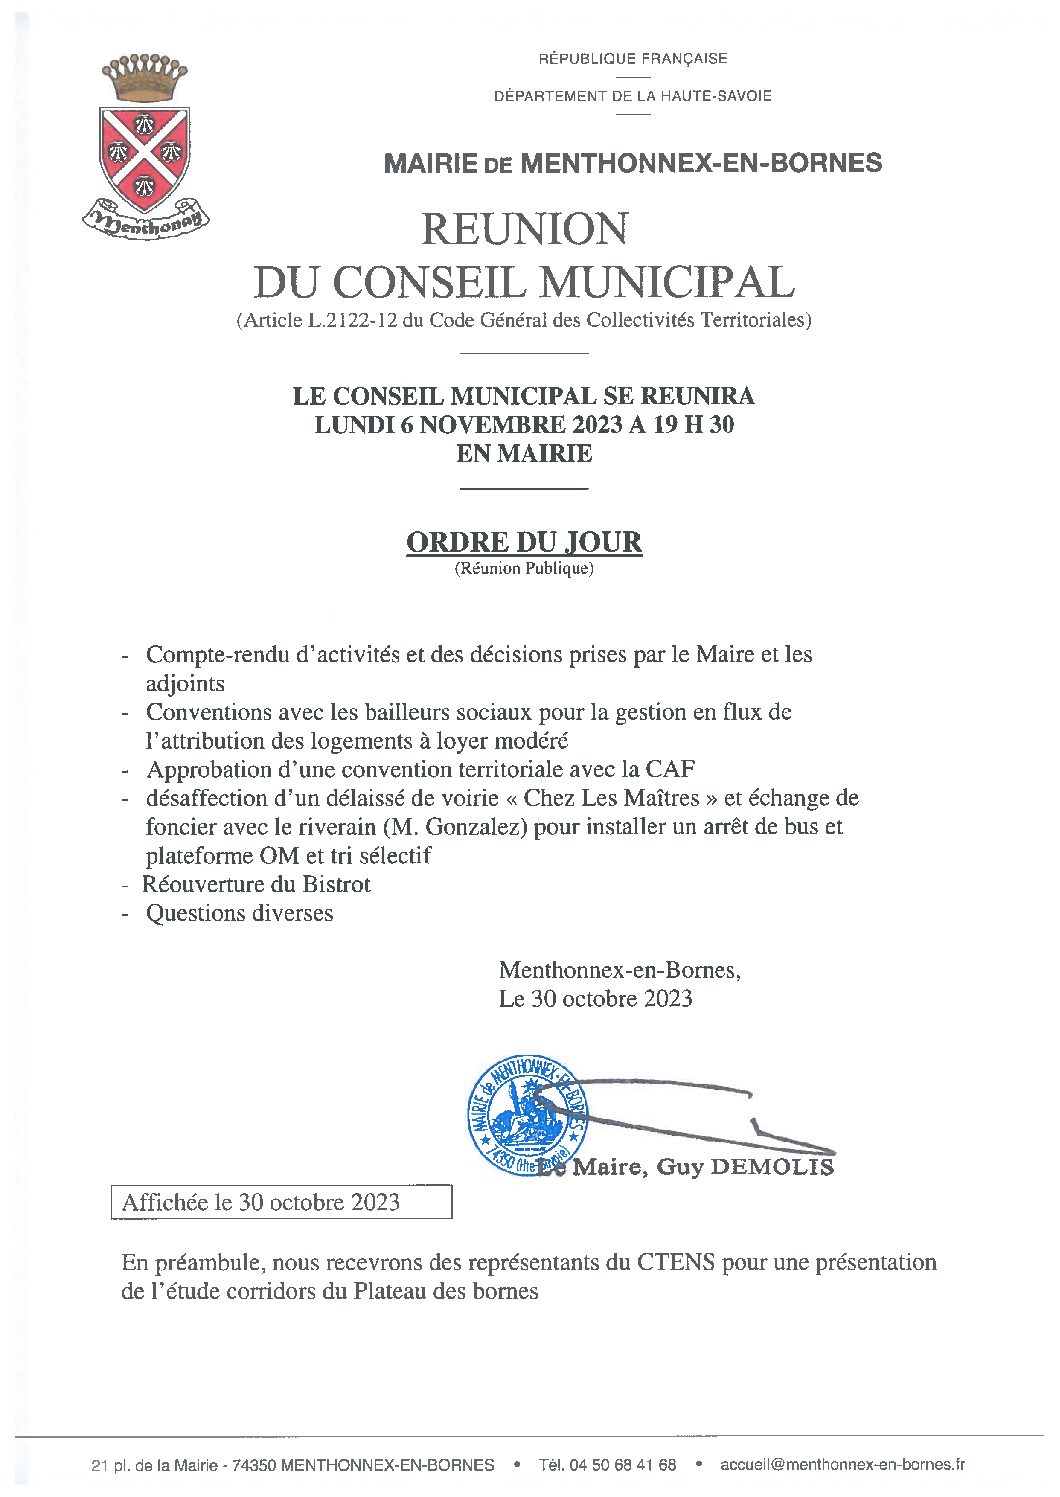 Ordre du jour du conseil municipal du 6 novembre 2023